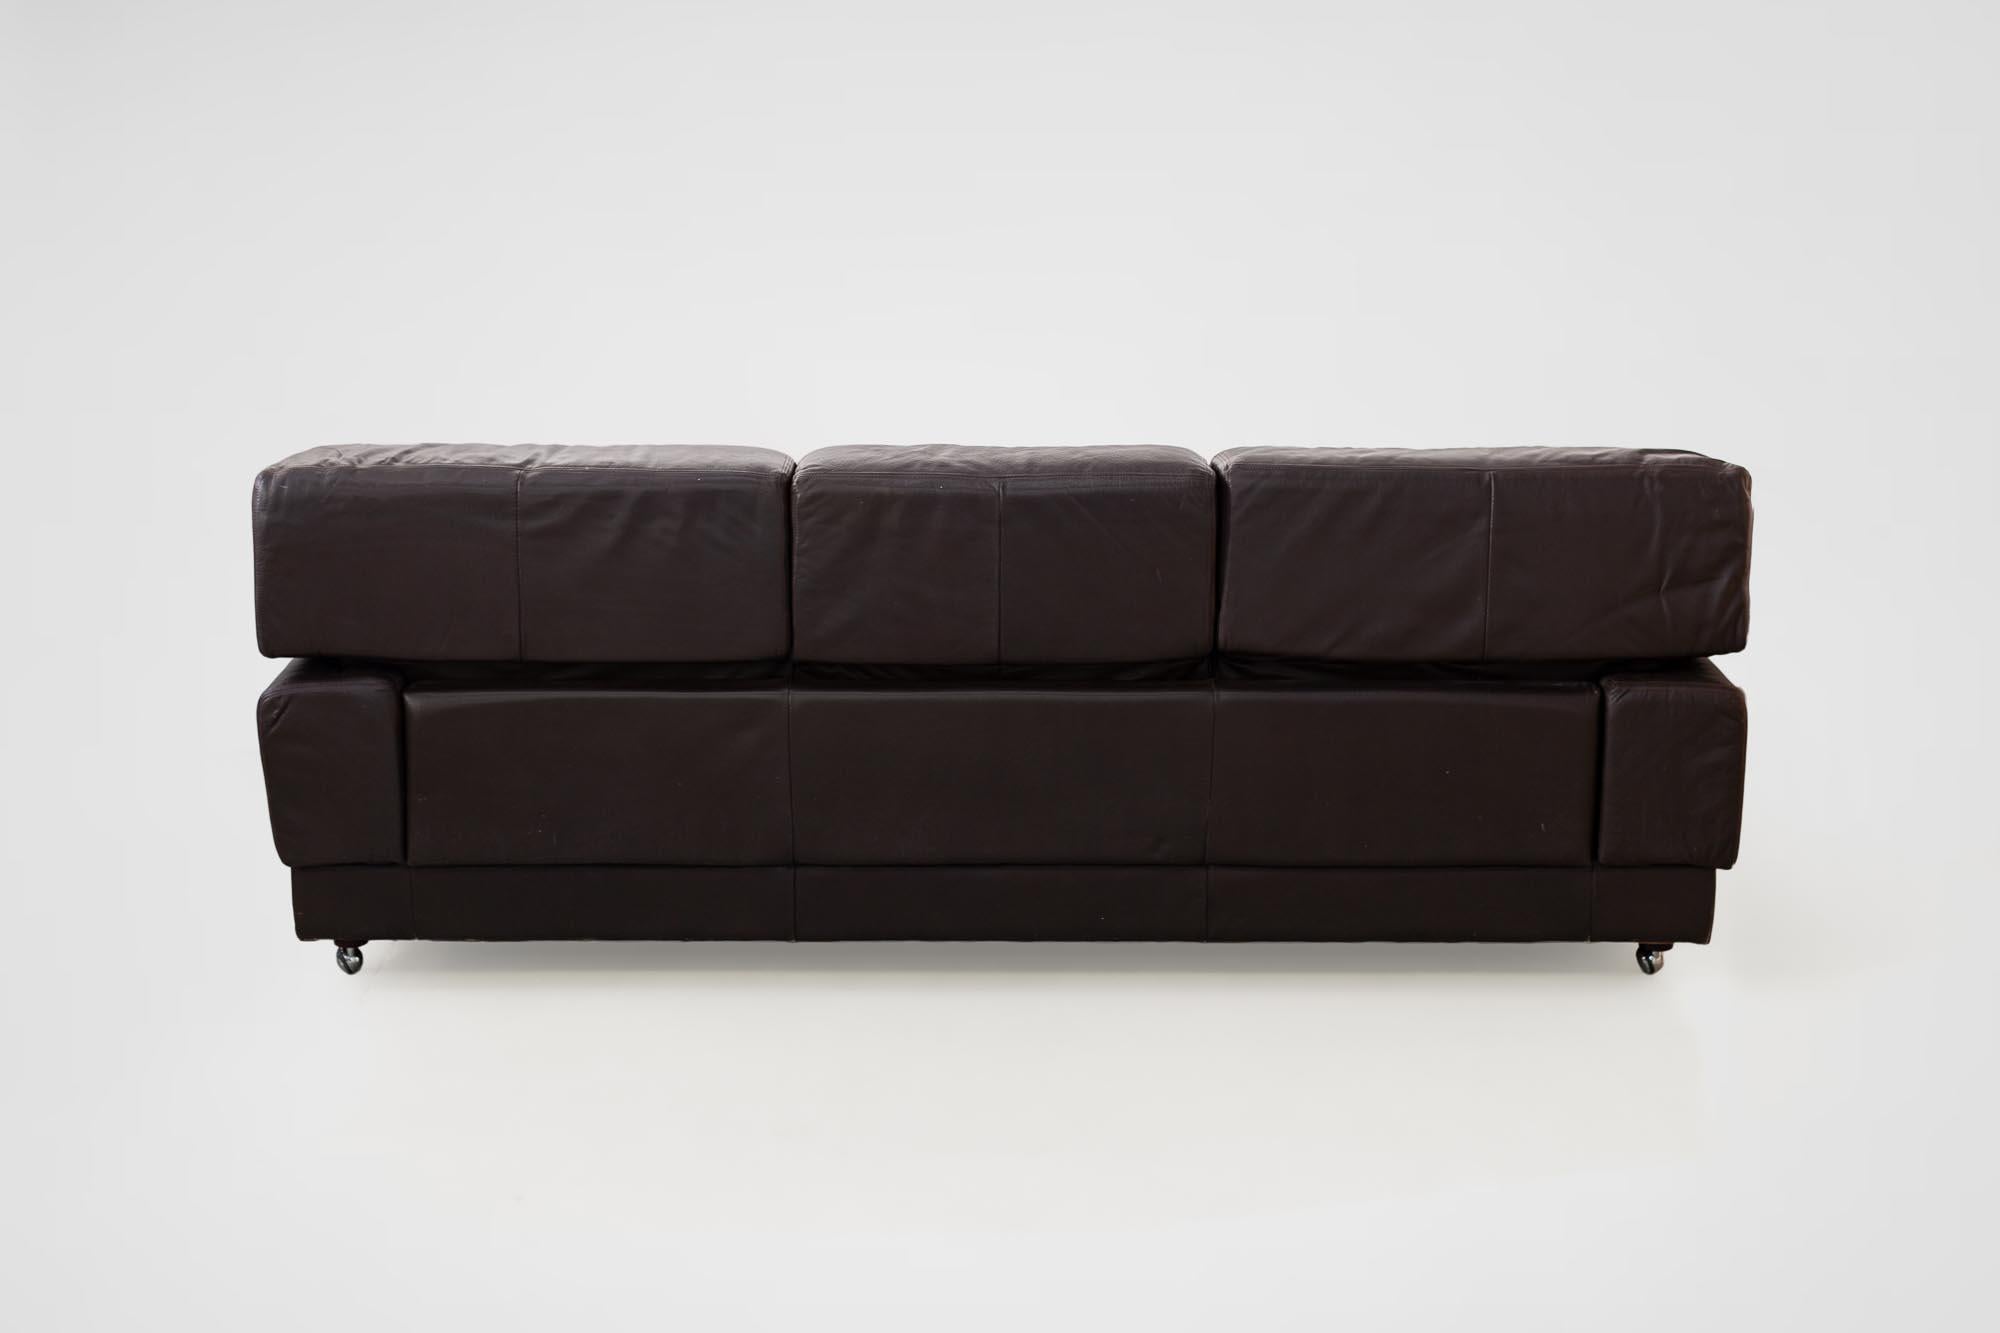 Rare Percival Lafer Sofa in Dark Brown Leather For Sale 12